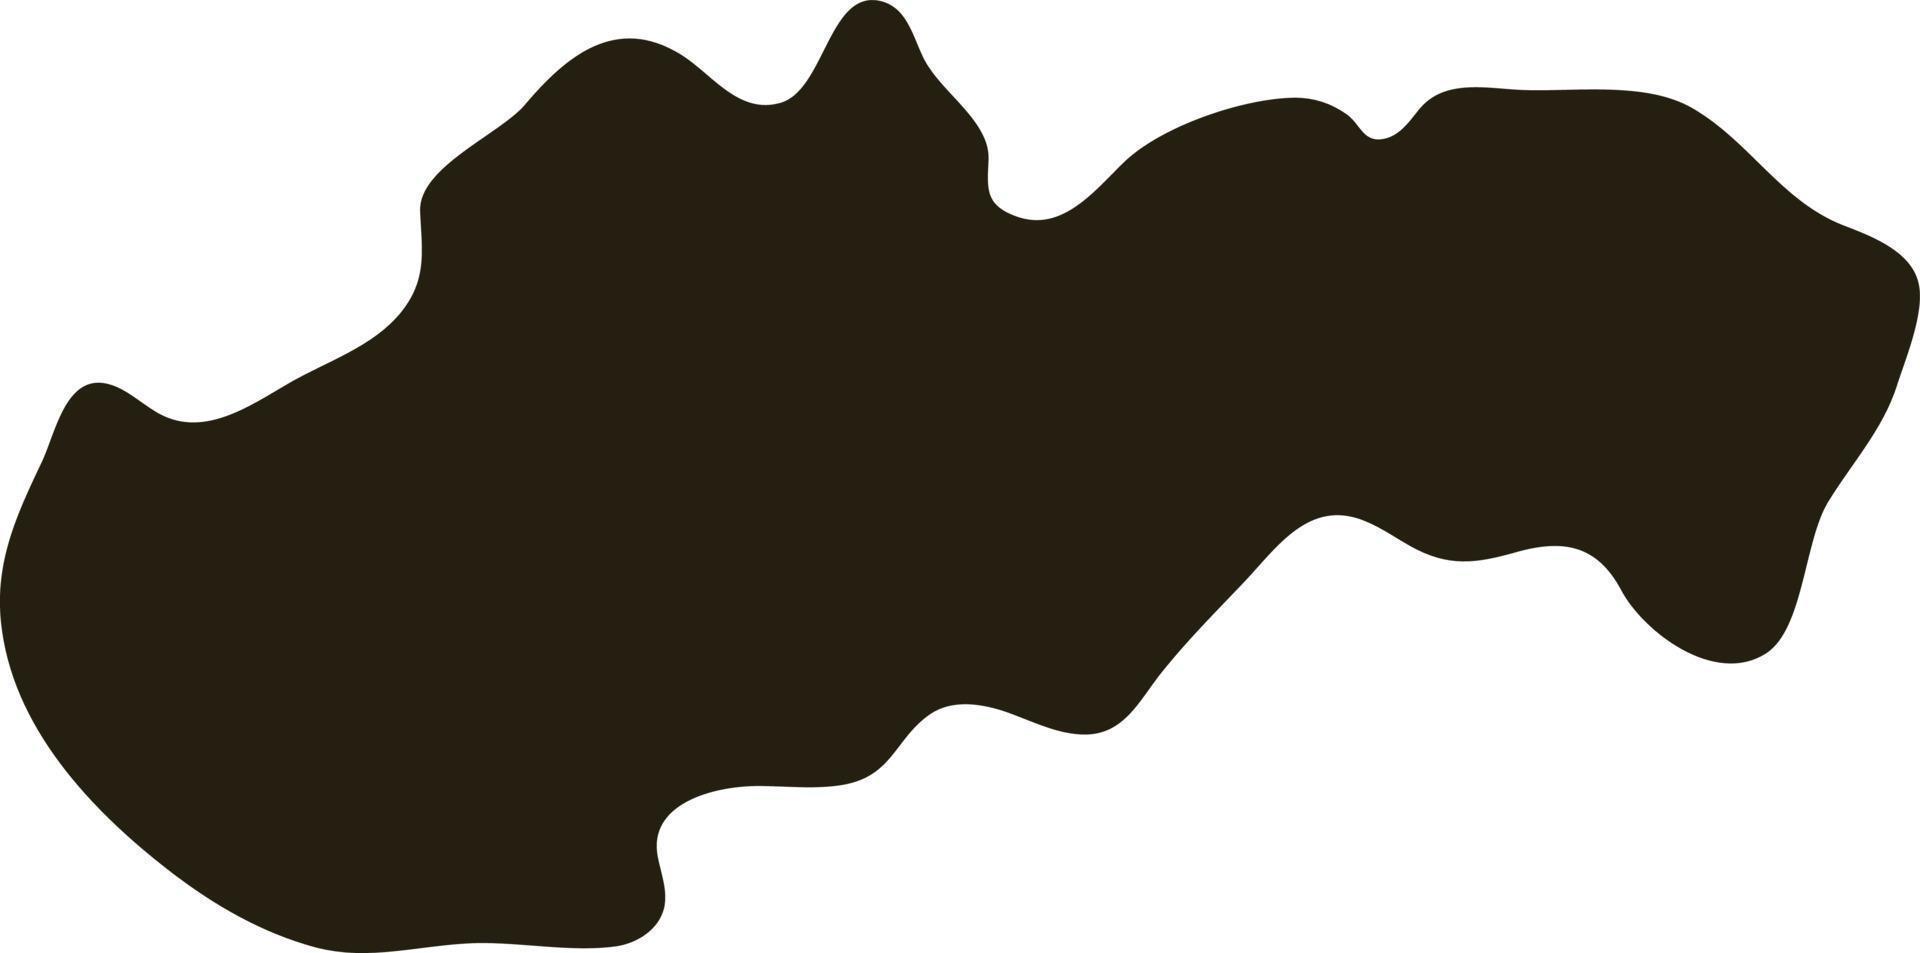 carte de la slovaquie. illustration vectorielle de solide silhouette simple carte vecteur